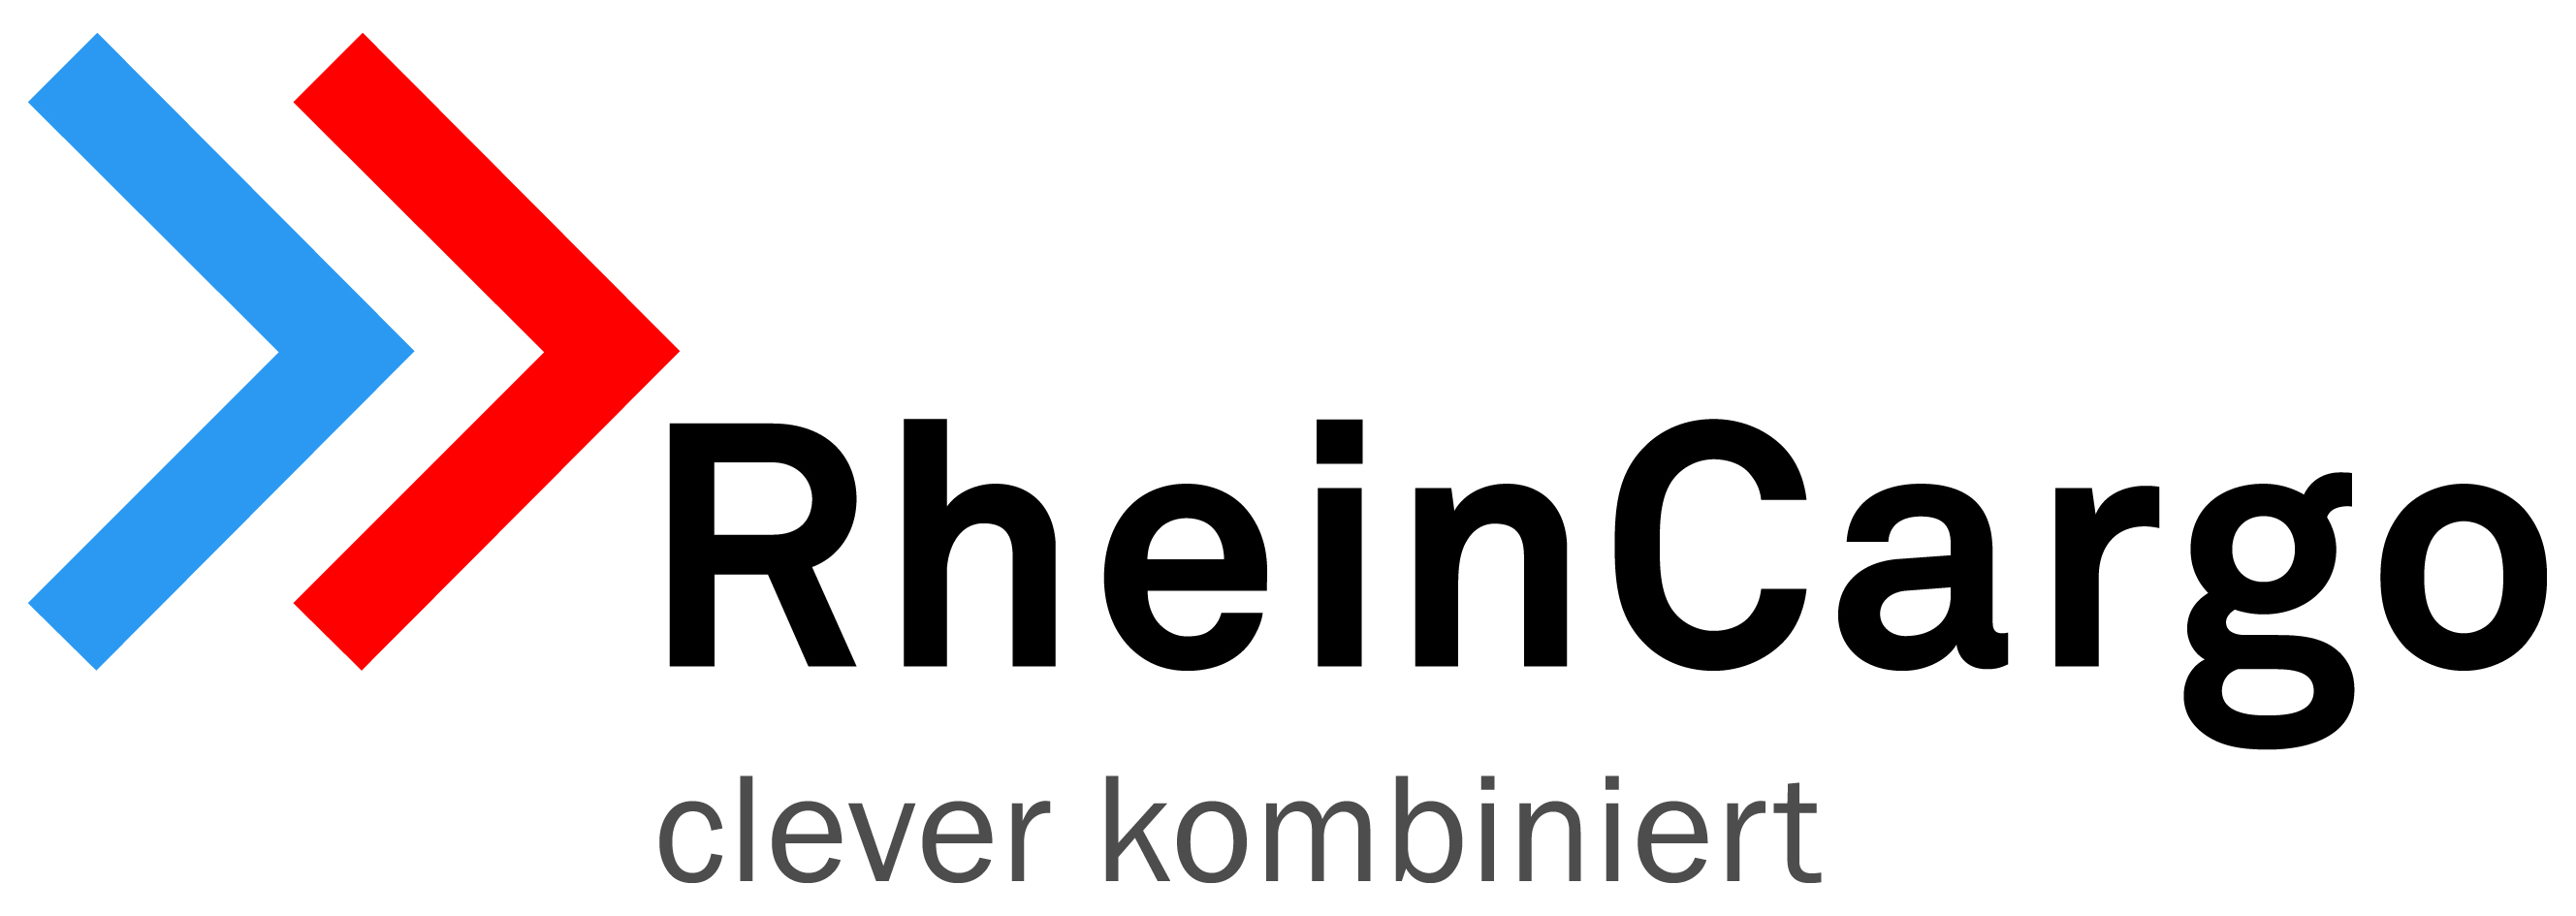 RheinCargo GmbH & Co KG